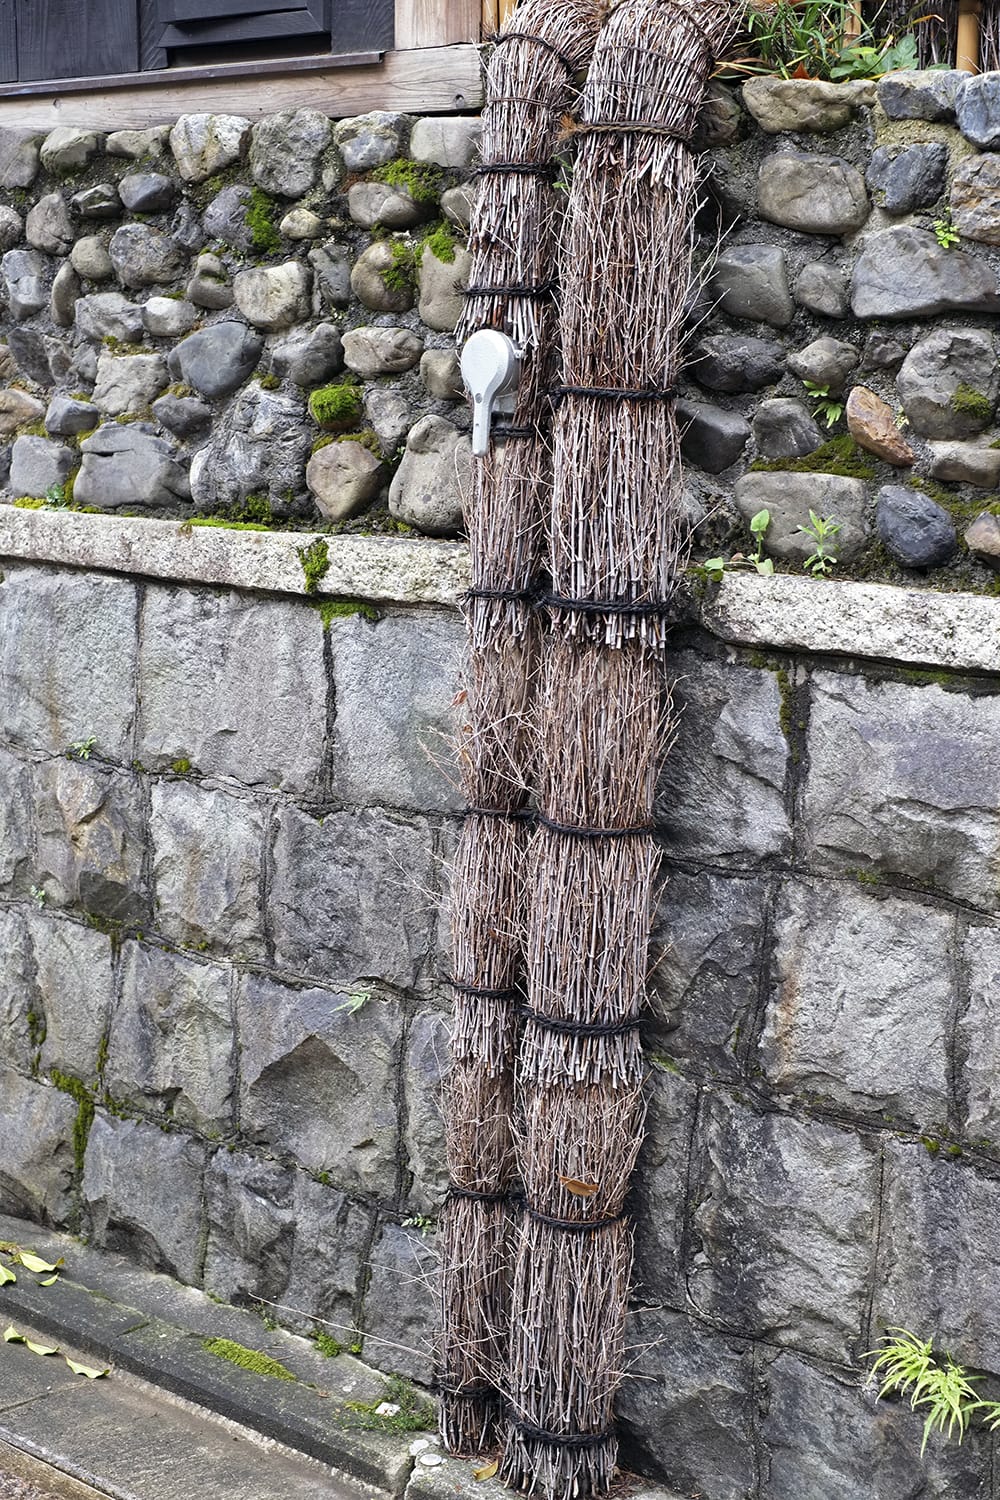 京都の石塀小路の水道管に竹の小枝が巻き付けられている